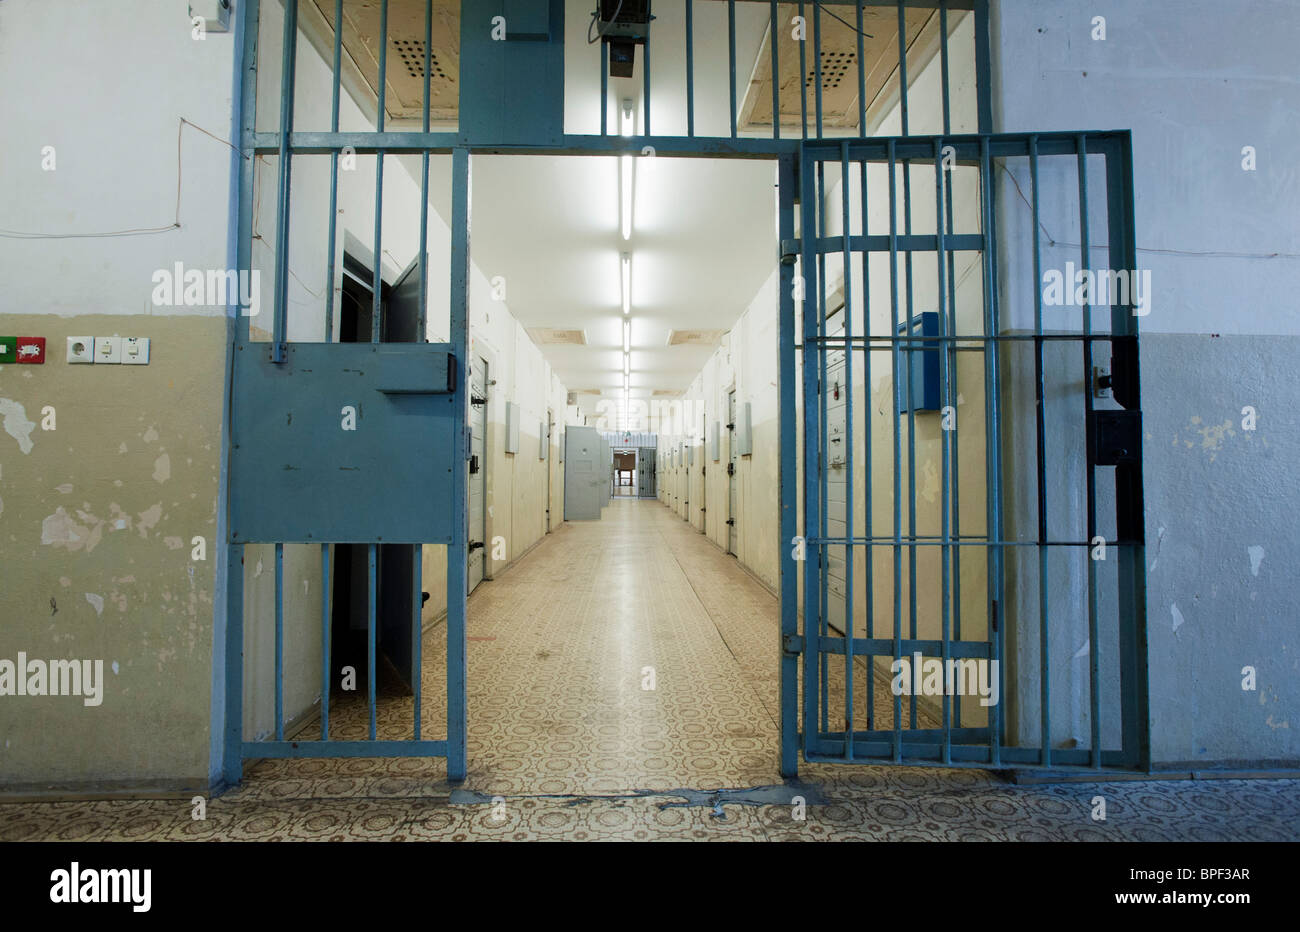 Couloir sécurisé avec des cellules au secret d'état est-allemand de la police ou de la sécurité à la prison de la STASI à Berlin Hohenschönhausen Allemagne Banque D'Images